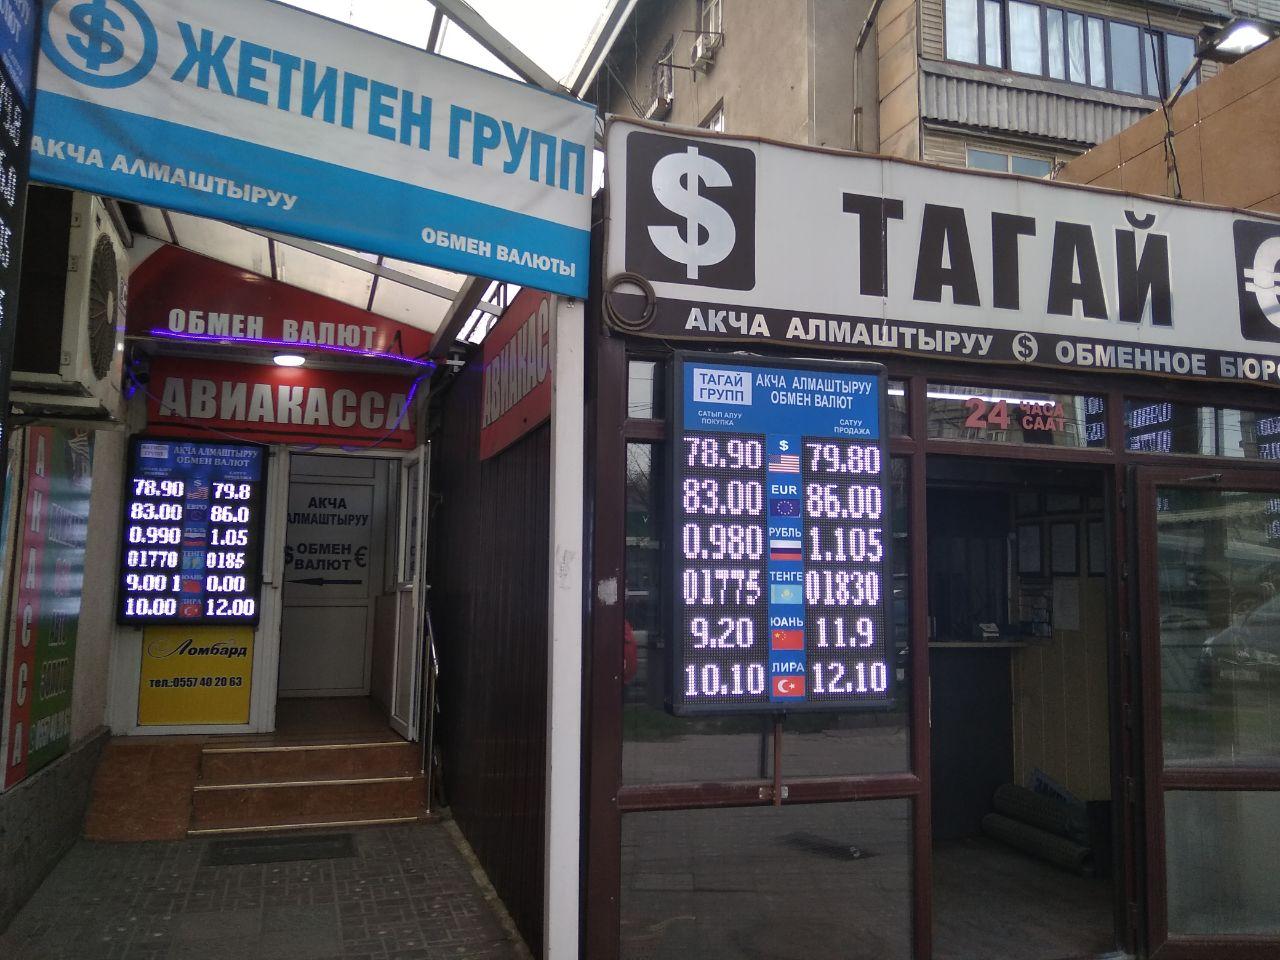 Обмен валюты рубл на сом скрипт для кранов биткоин